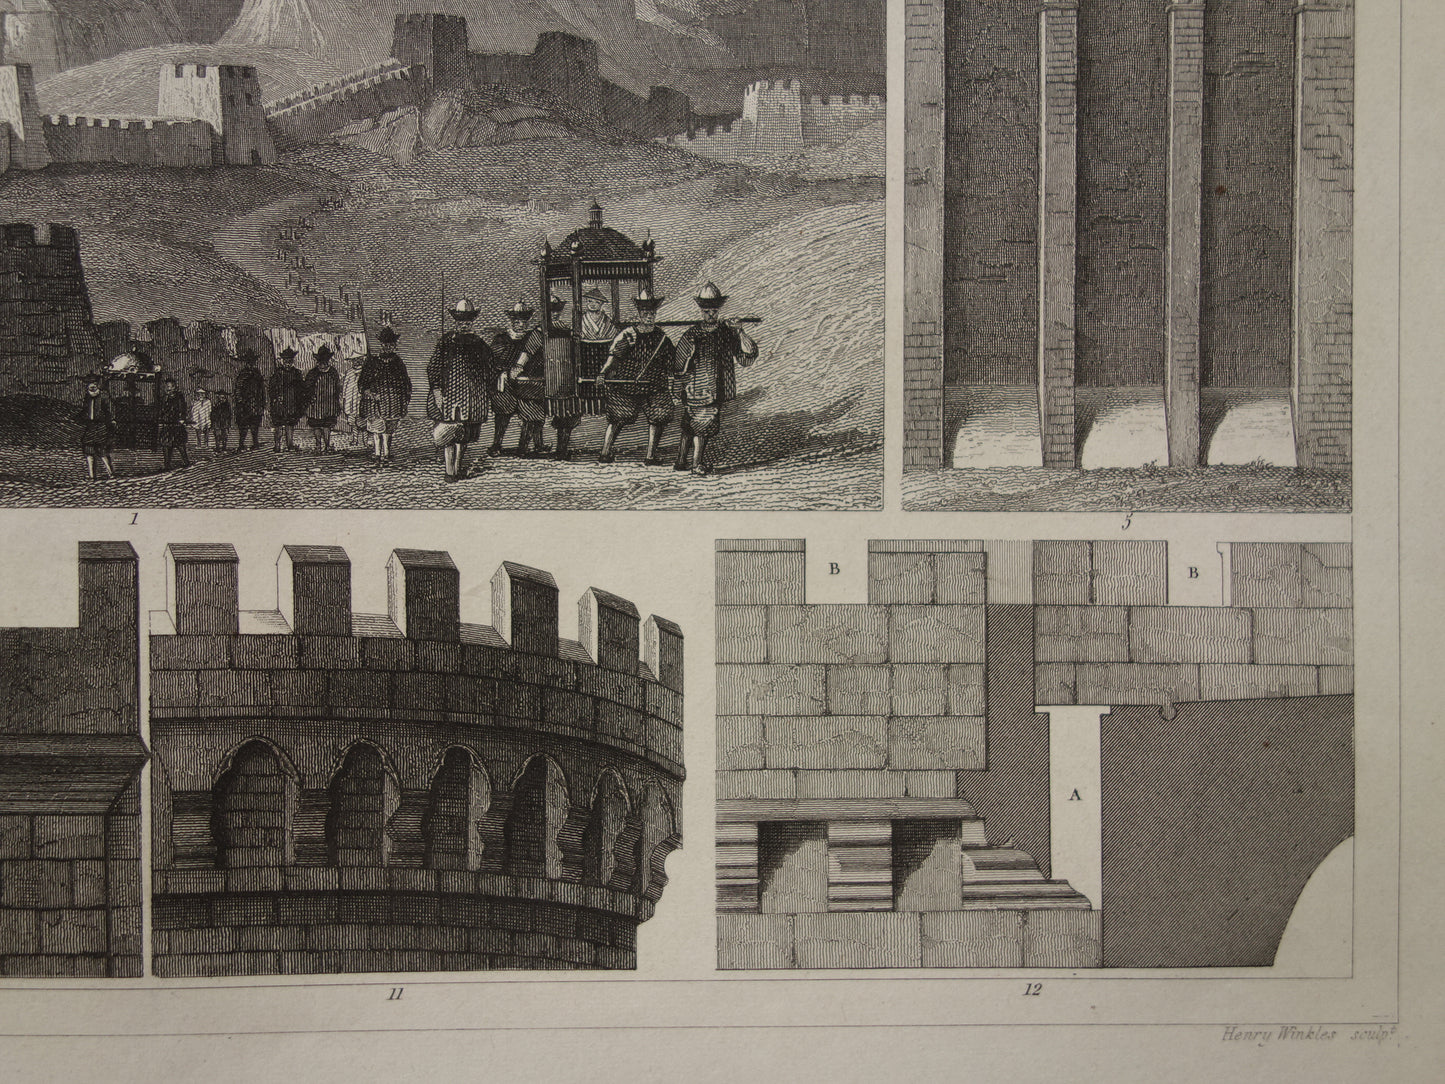 Oude militaire print van stadsmuren en grote muur van China originele antieke illustratie uit 1849 torens vestingwerken kantelen vintage prints